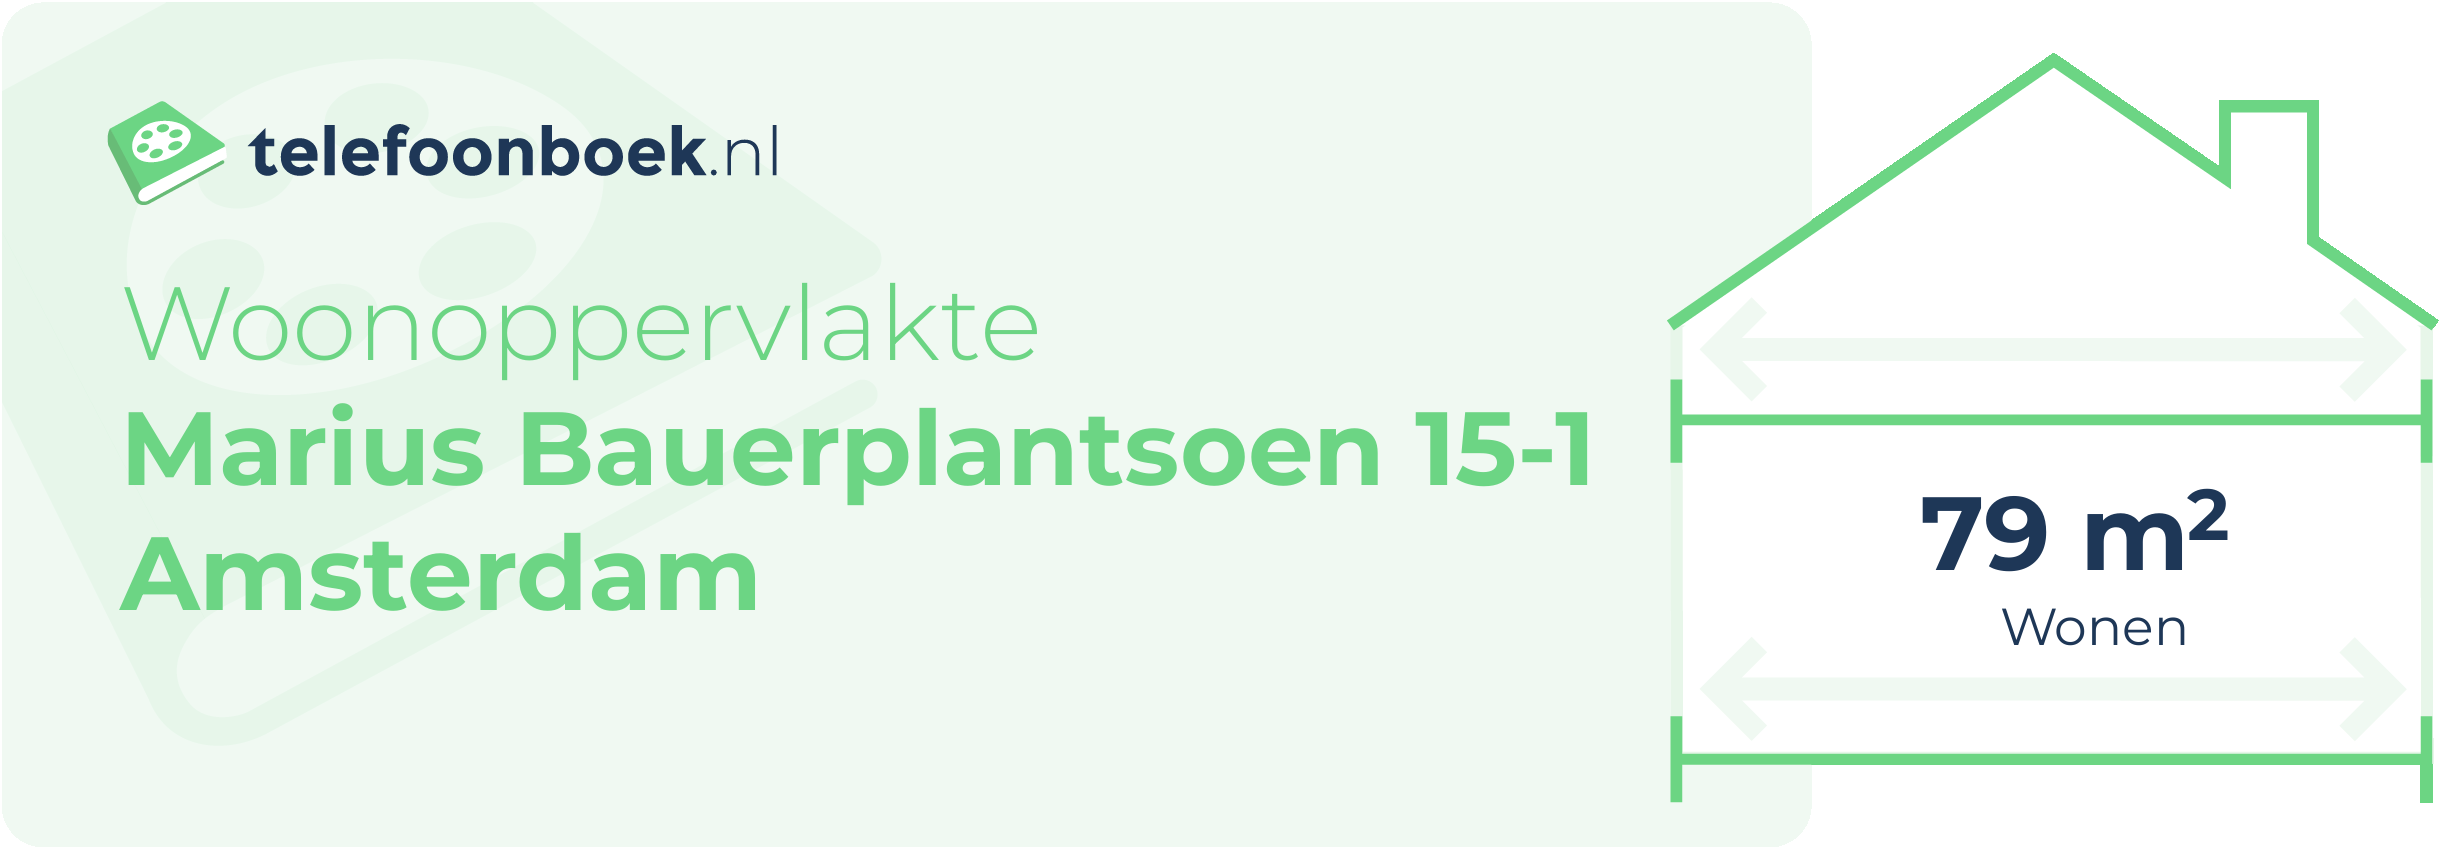 Woonoppervlakte Marius Bauerplantsoen 15-1 Amsterdam